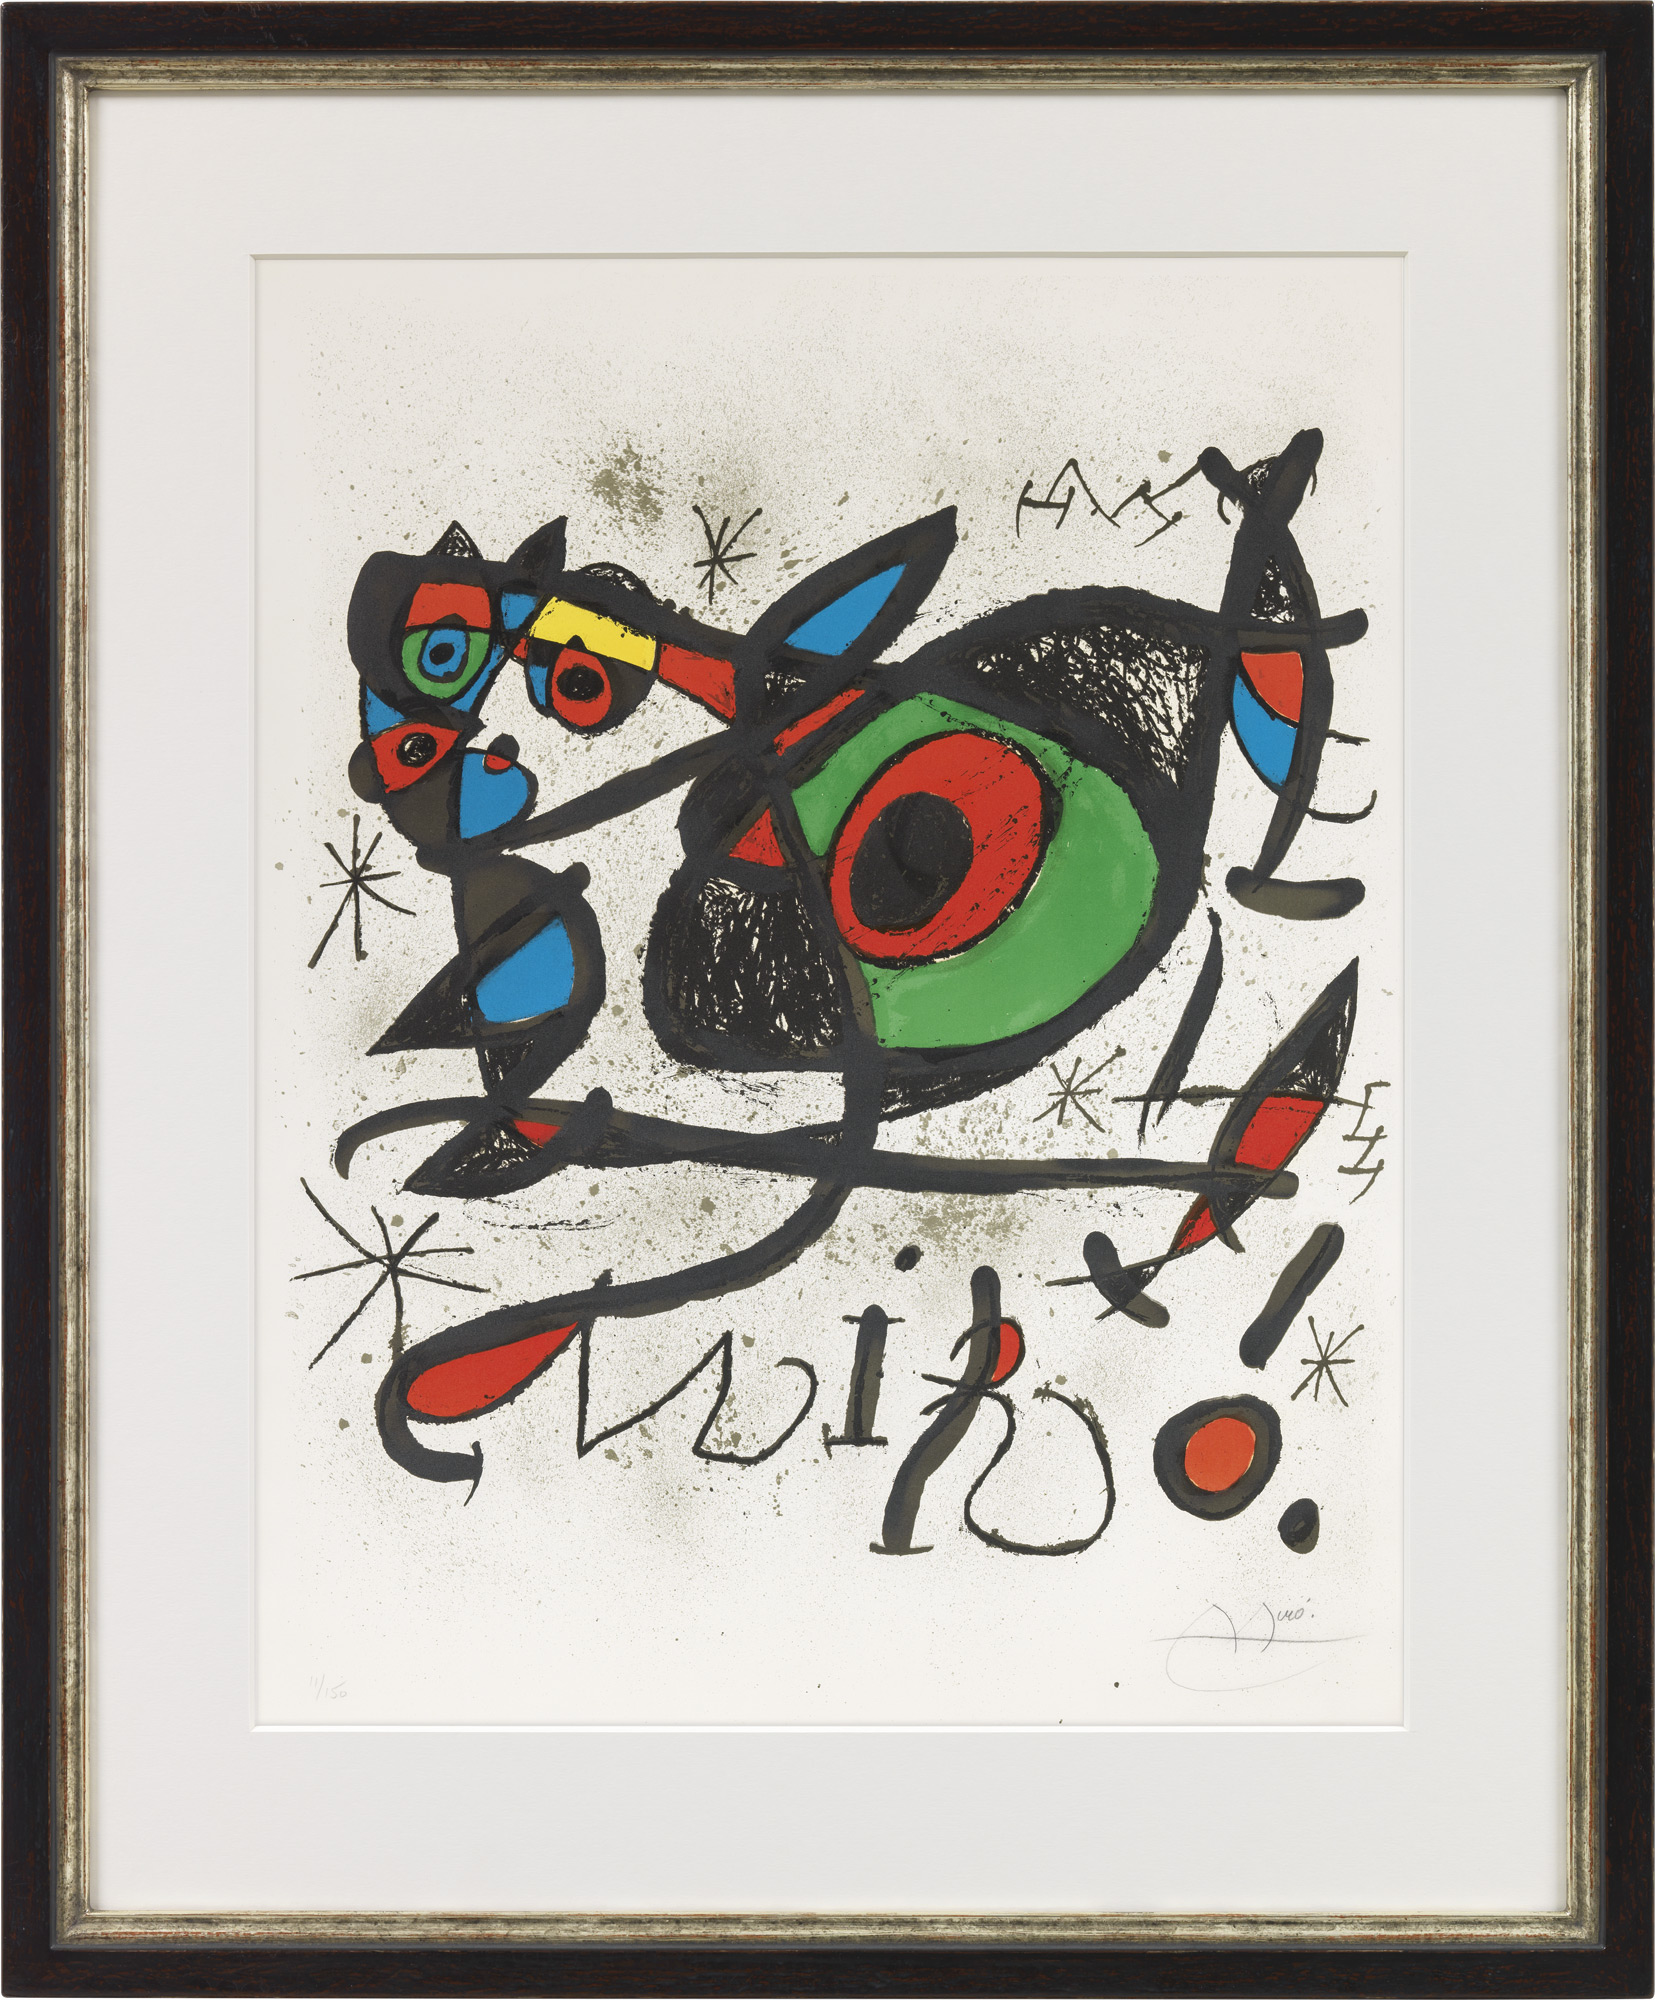 Bild "Sobreteixims i Escultures" von Joan Miró